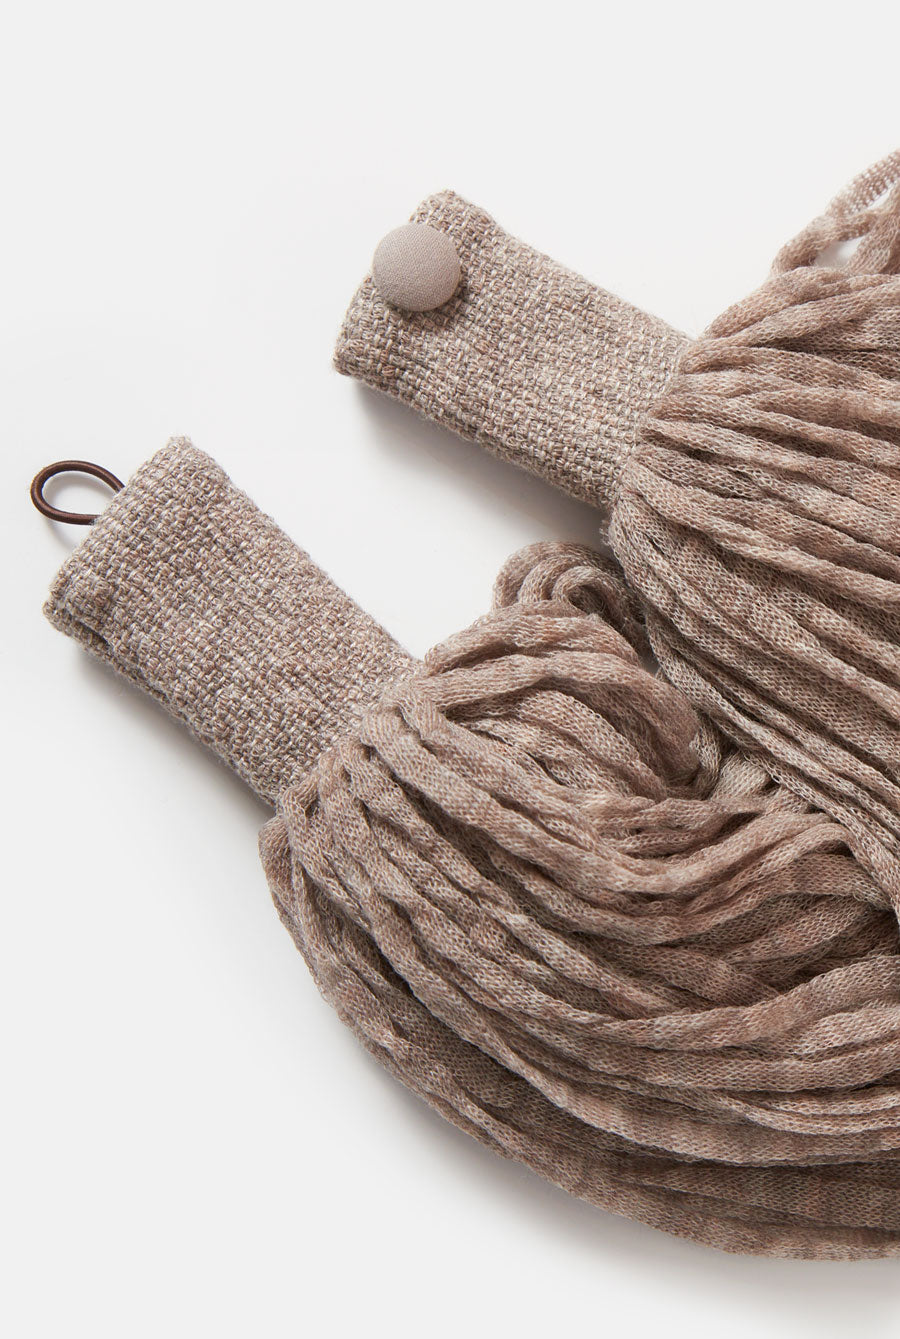 Wool necklace topo Neckclace Victoria de Talhora 